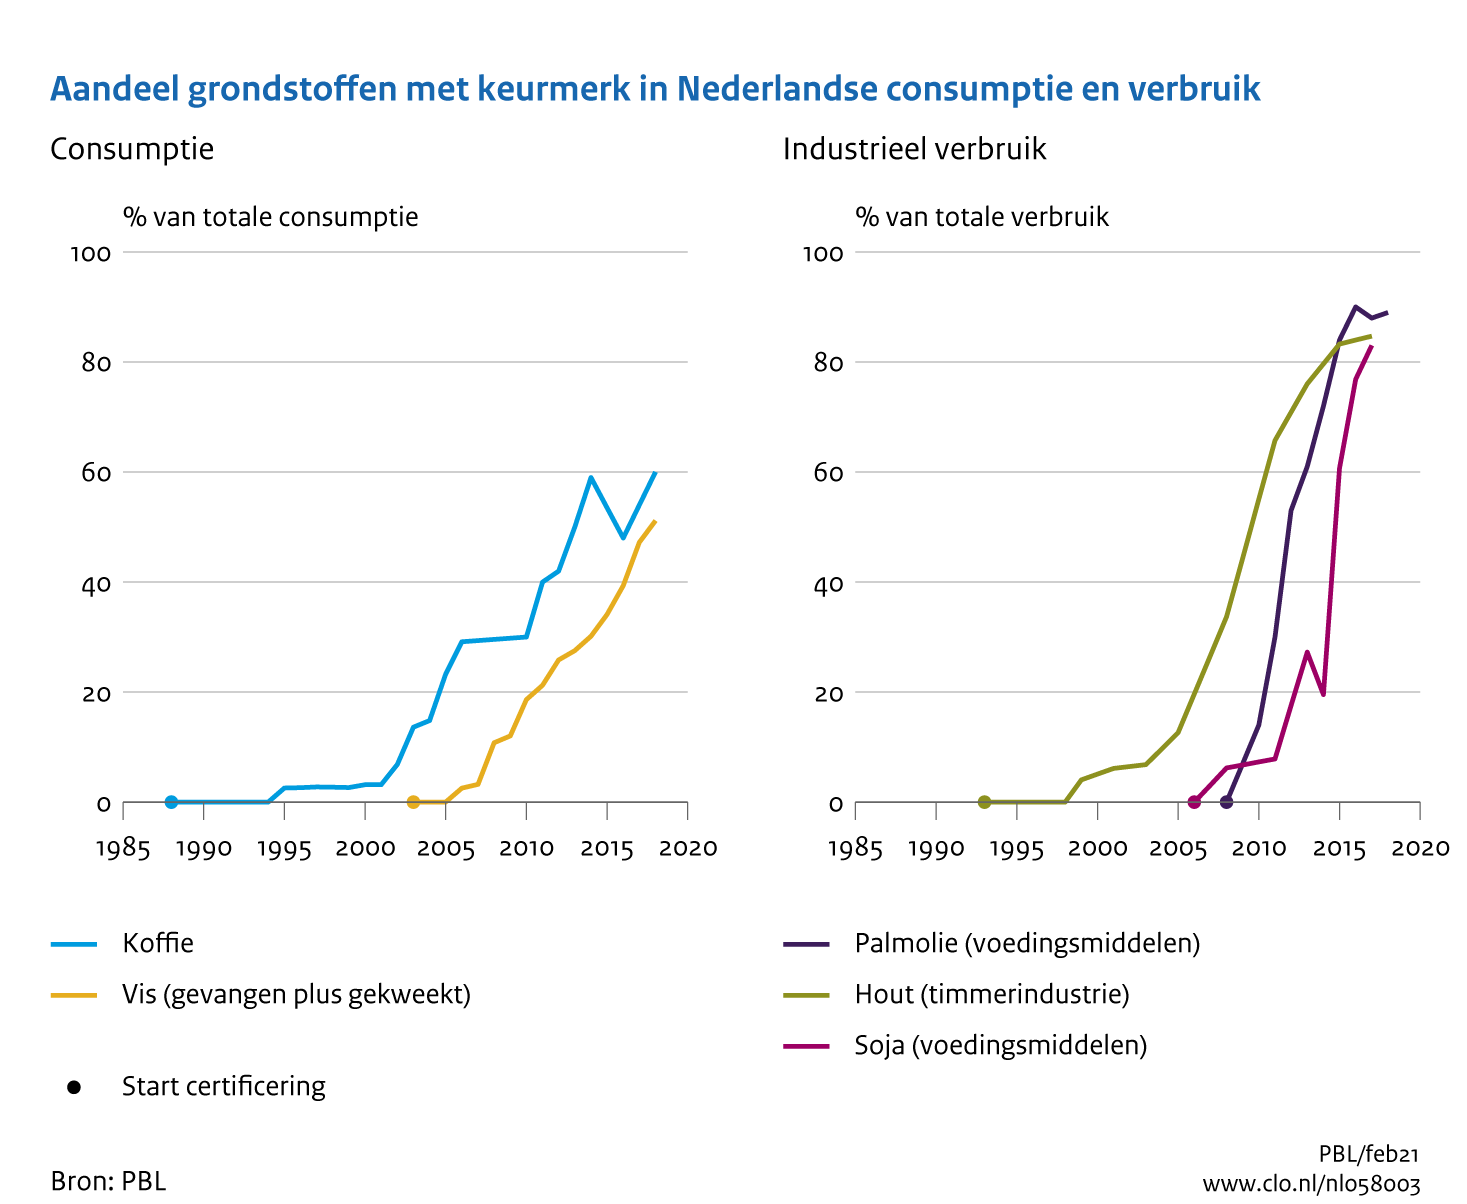 Figuur Marktaandeel van duurzaam geproduceerde grondstoffen in de Nederlandse consumptie en industrieel verbruik. In de rest van de tekst wordt deze figuur uitgebreider uitgelegd.